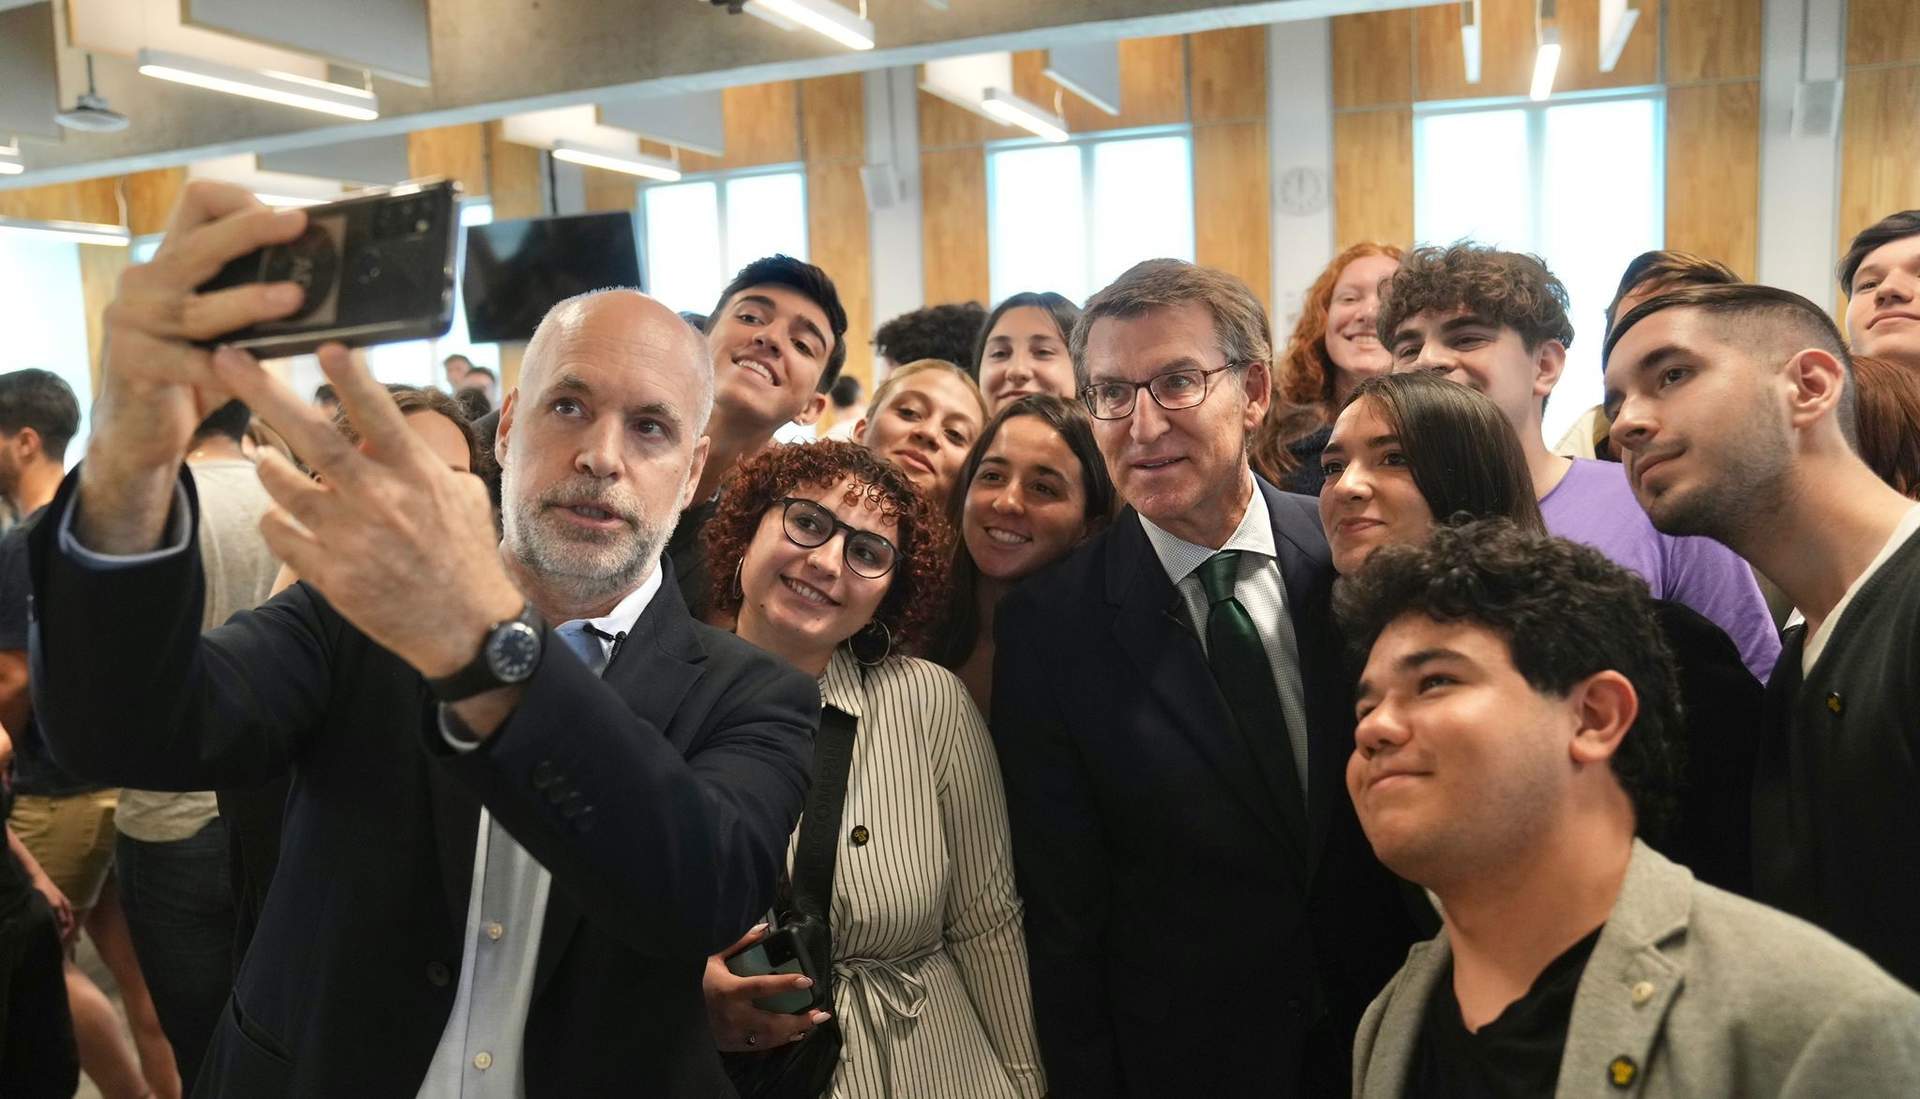 Feijóo y Weber viajan juntos a Chile tras verse en Argentina con varios dirigentes conservadores como Macri y Larreta